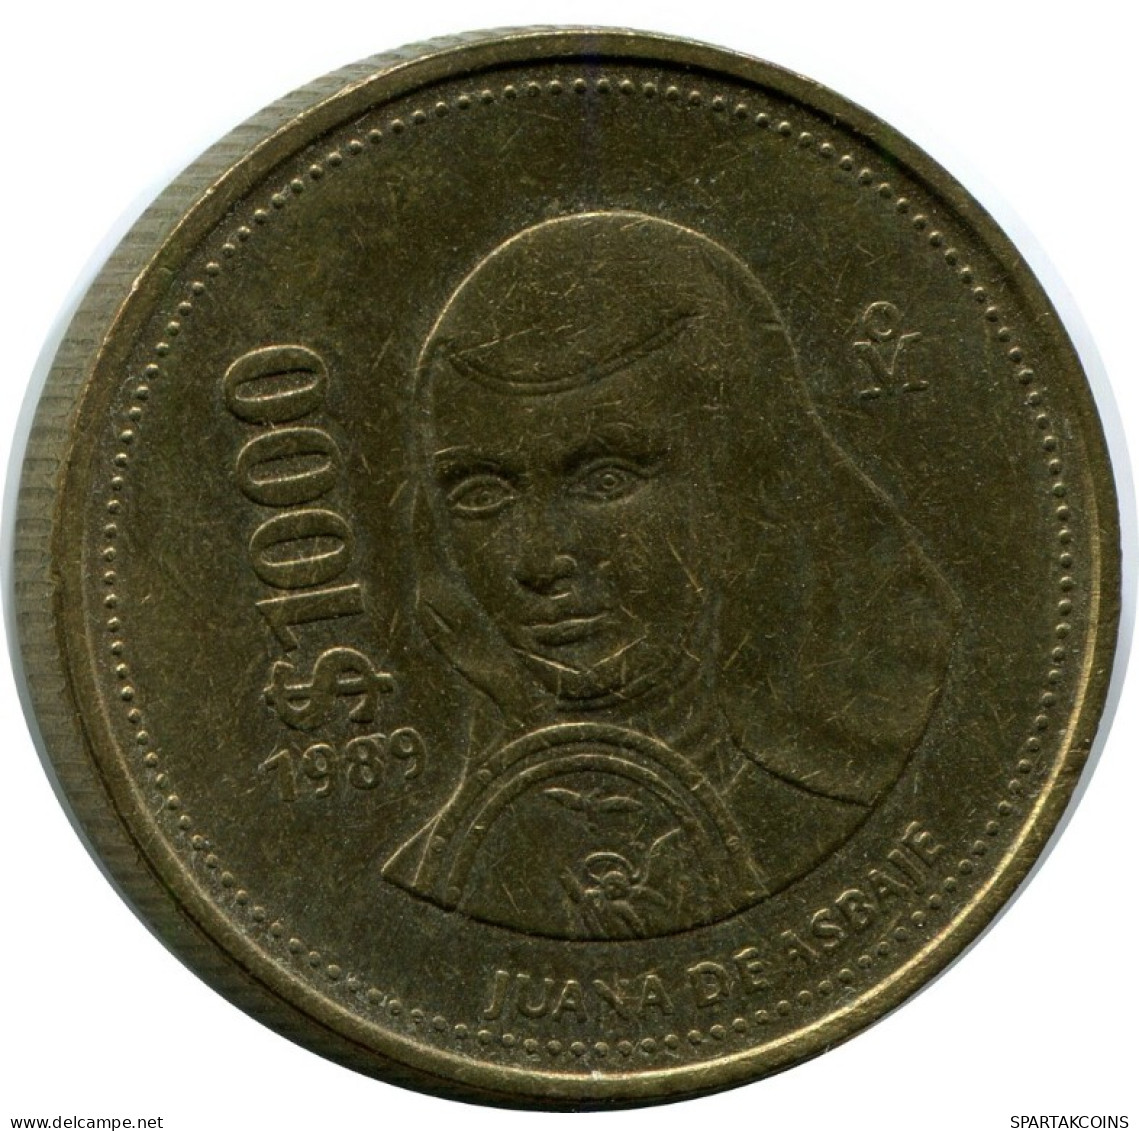 1000 PESOS 1989 MEXICO Coin #AH537.5.U.A - Mexico